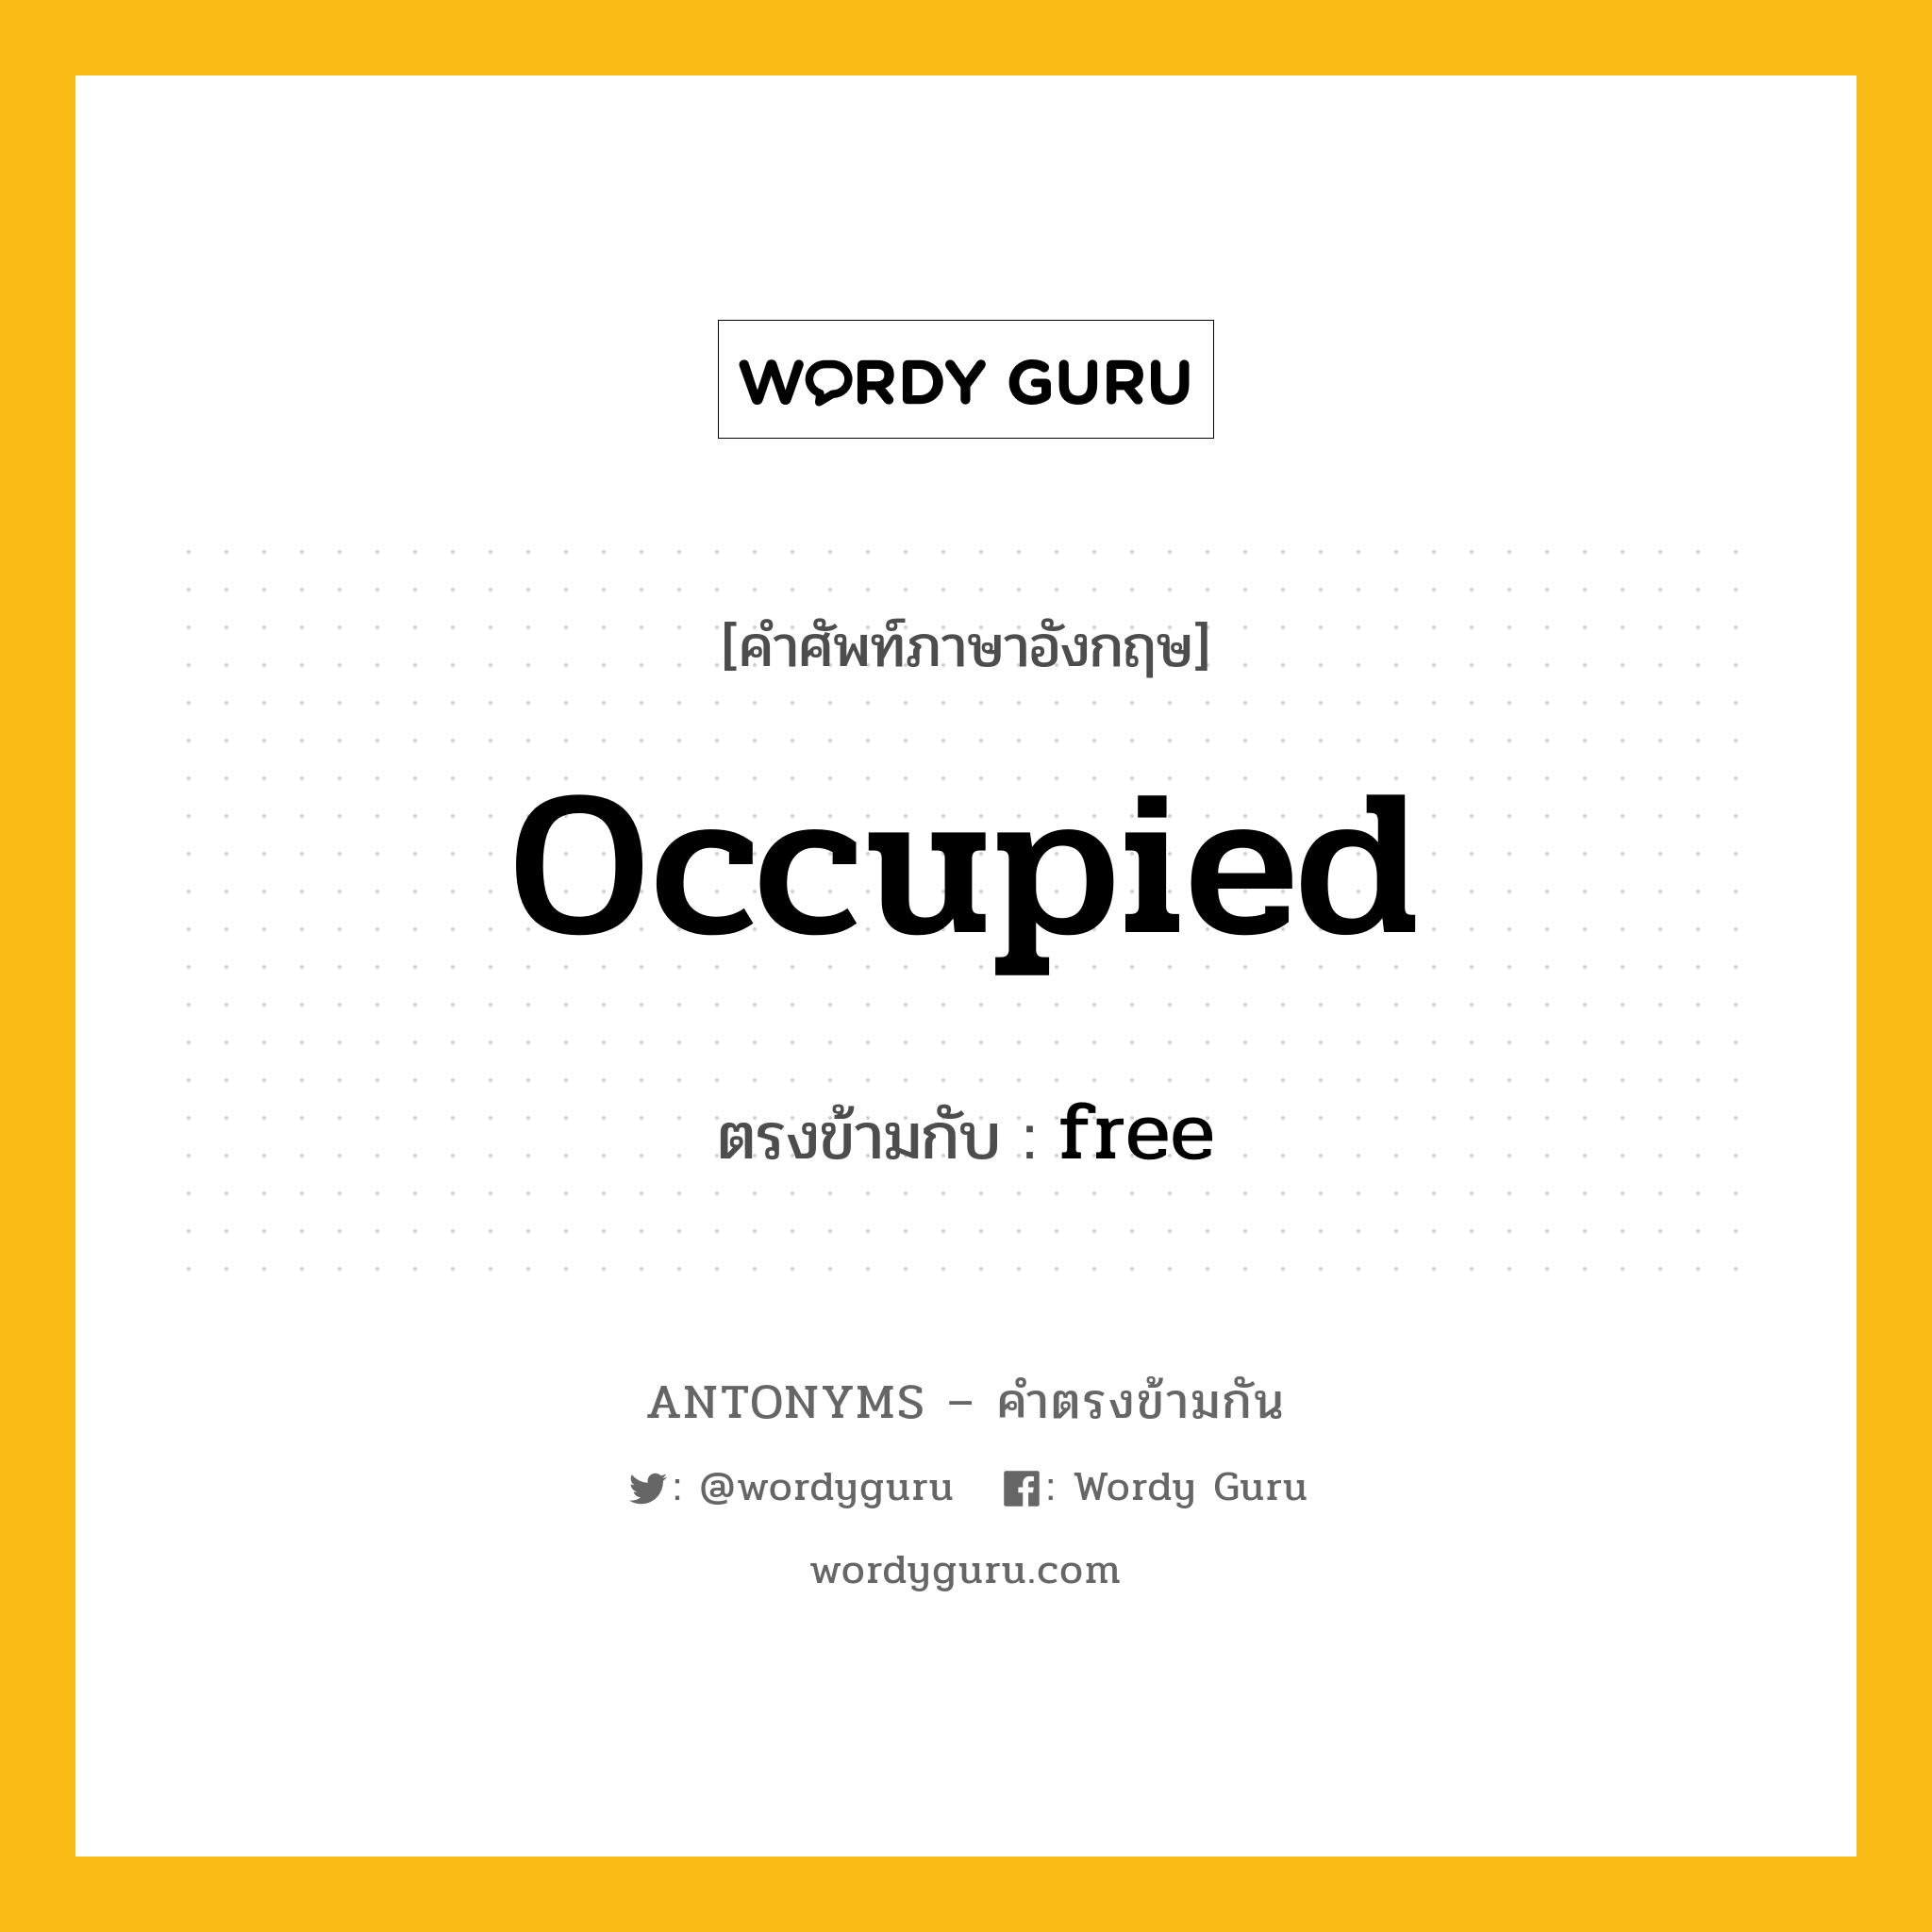 occupied เป็นคำตรงข้ามกับคำไหนบ้าง?, คำศัพท์ภาษาอังกฤษ occupied ตรงข้ามกับ free หมวด free